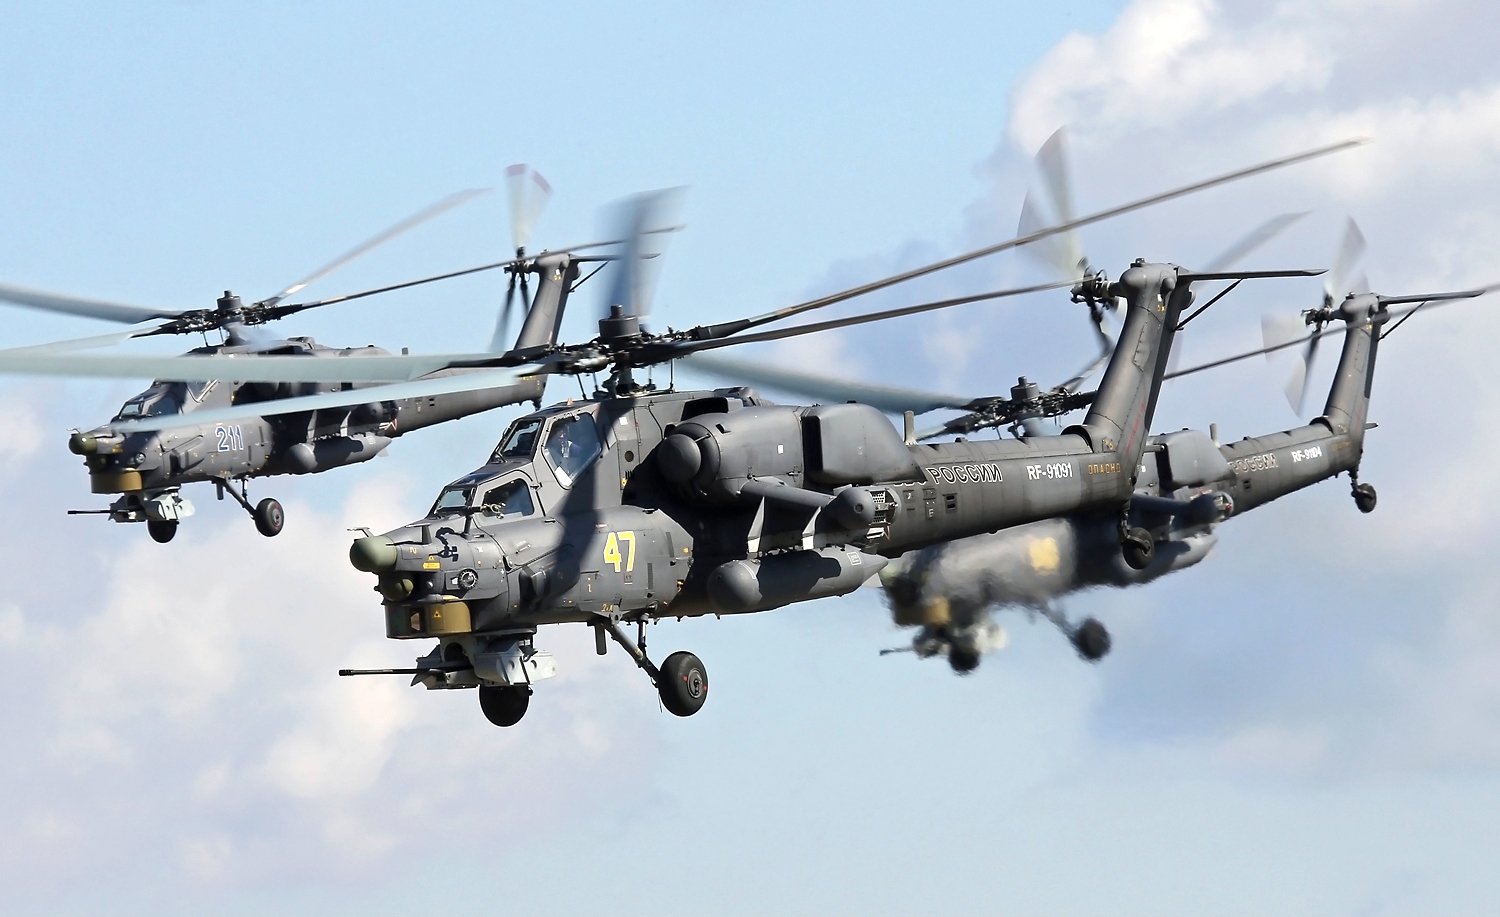 Helicóptero Mi-28 atinge 300km/h e tem autonomia de voo de até 450 km